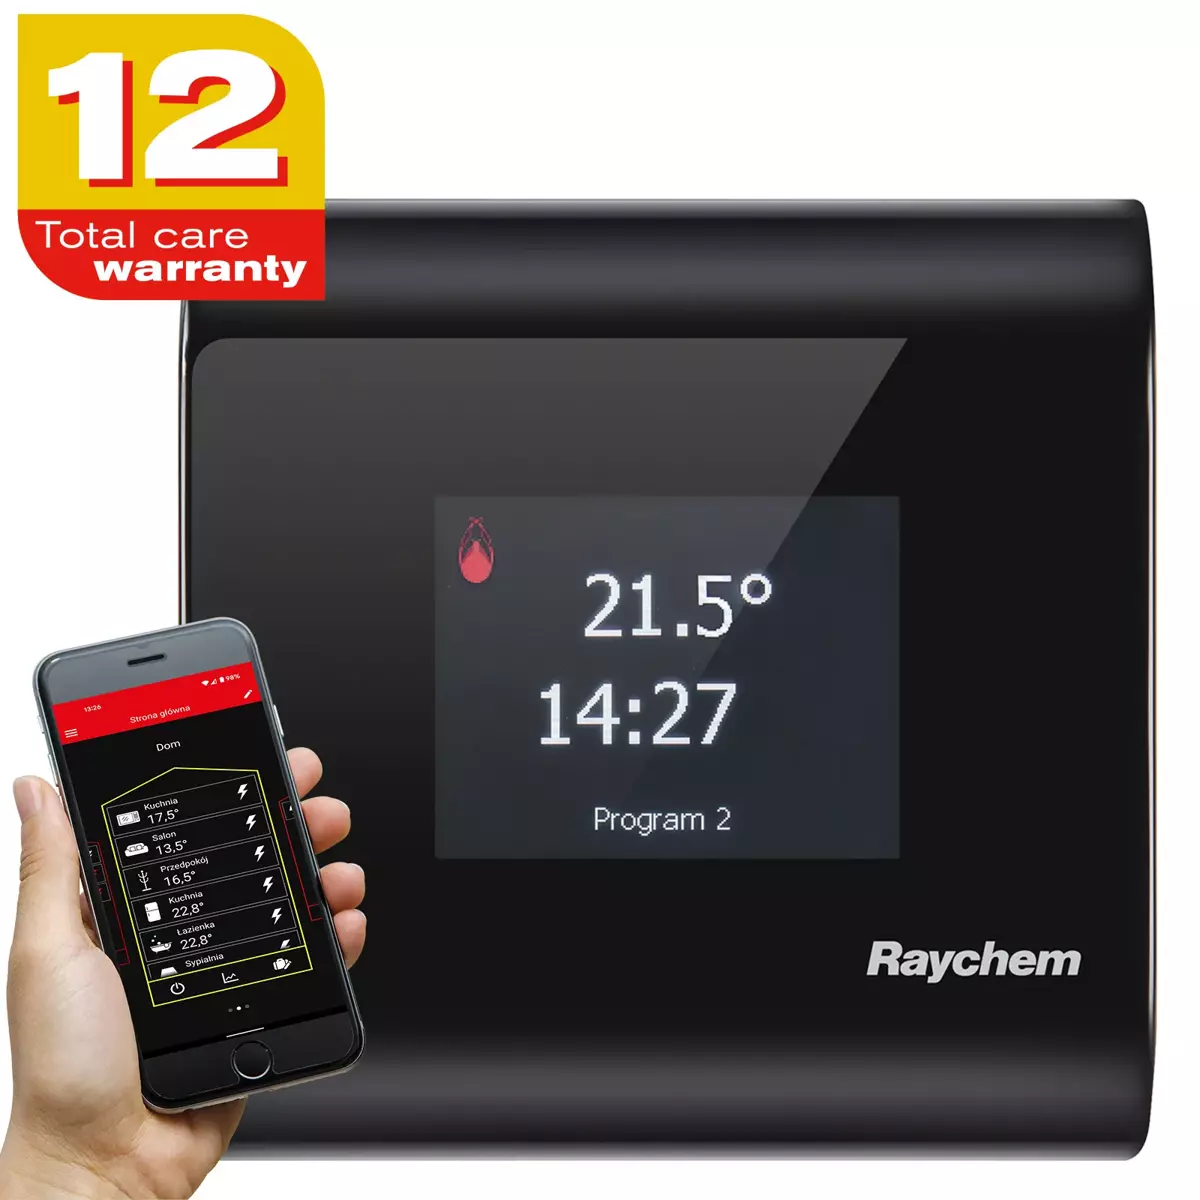 Termostat programowany z ekranem dotykowym, możliwość sterowania przez aplikację w smartfonie - nVent RAYCHEM SENZ WIFI